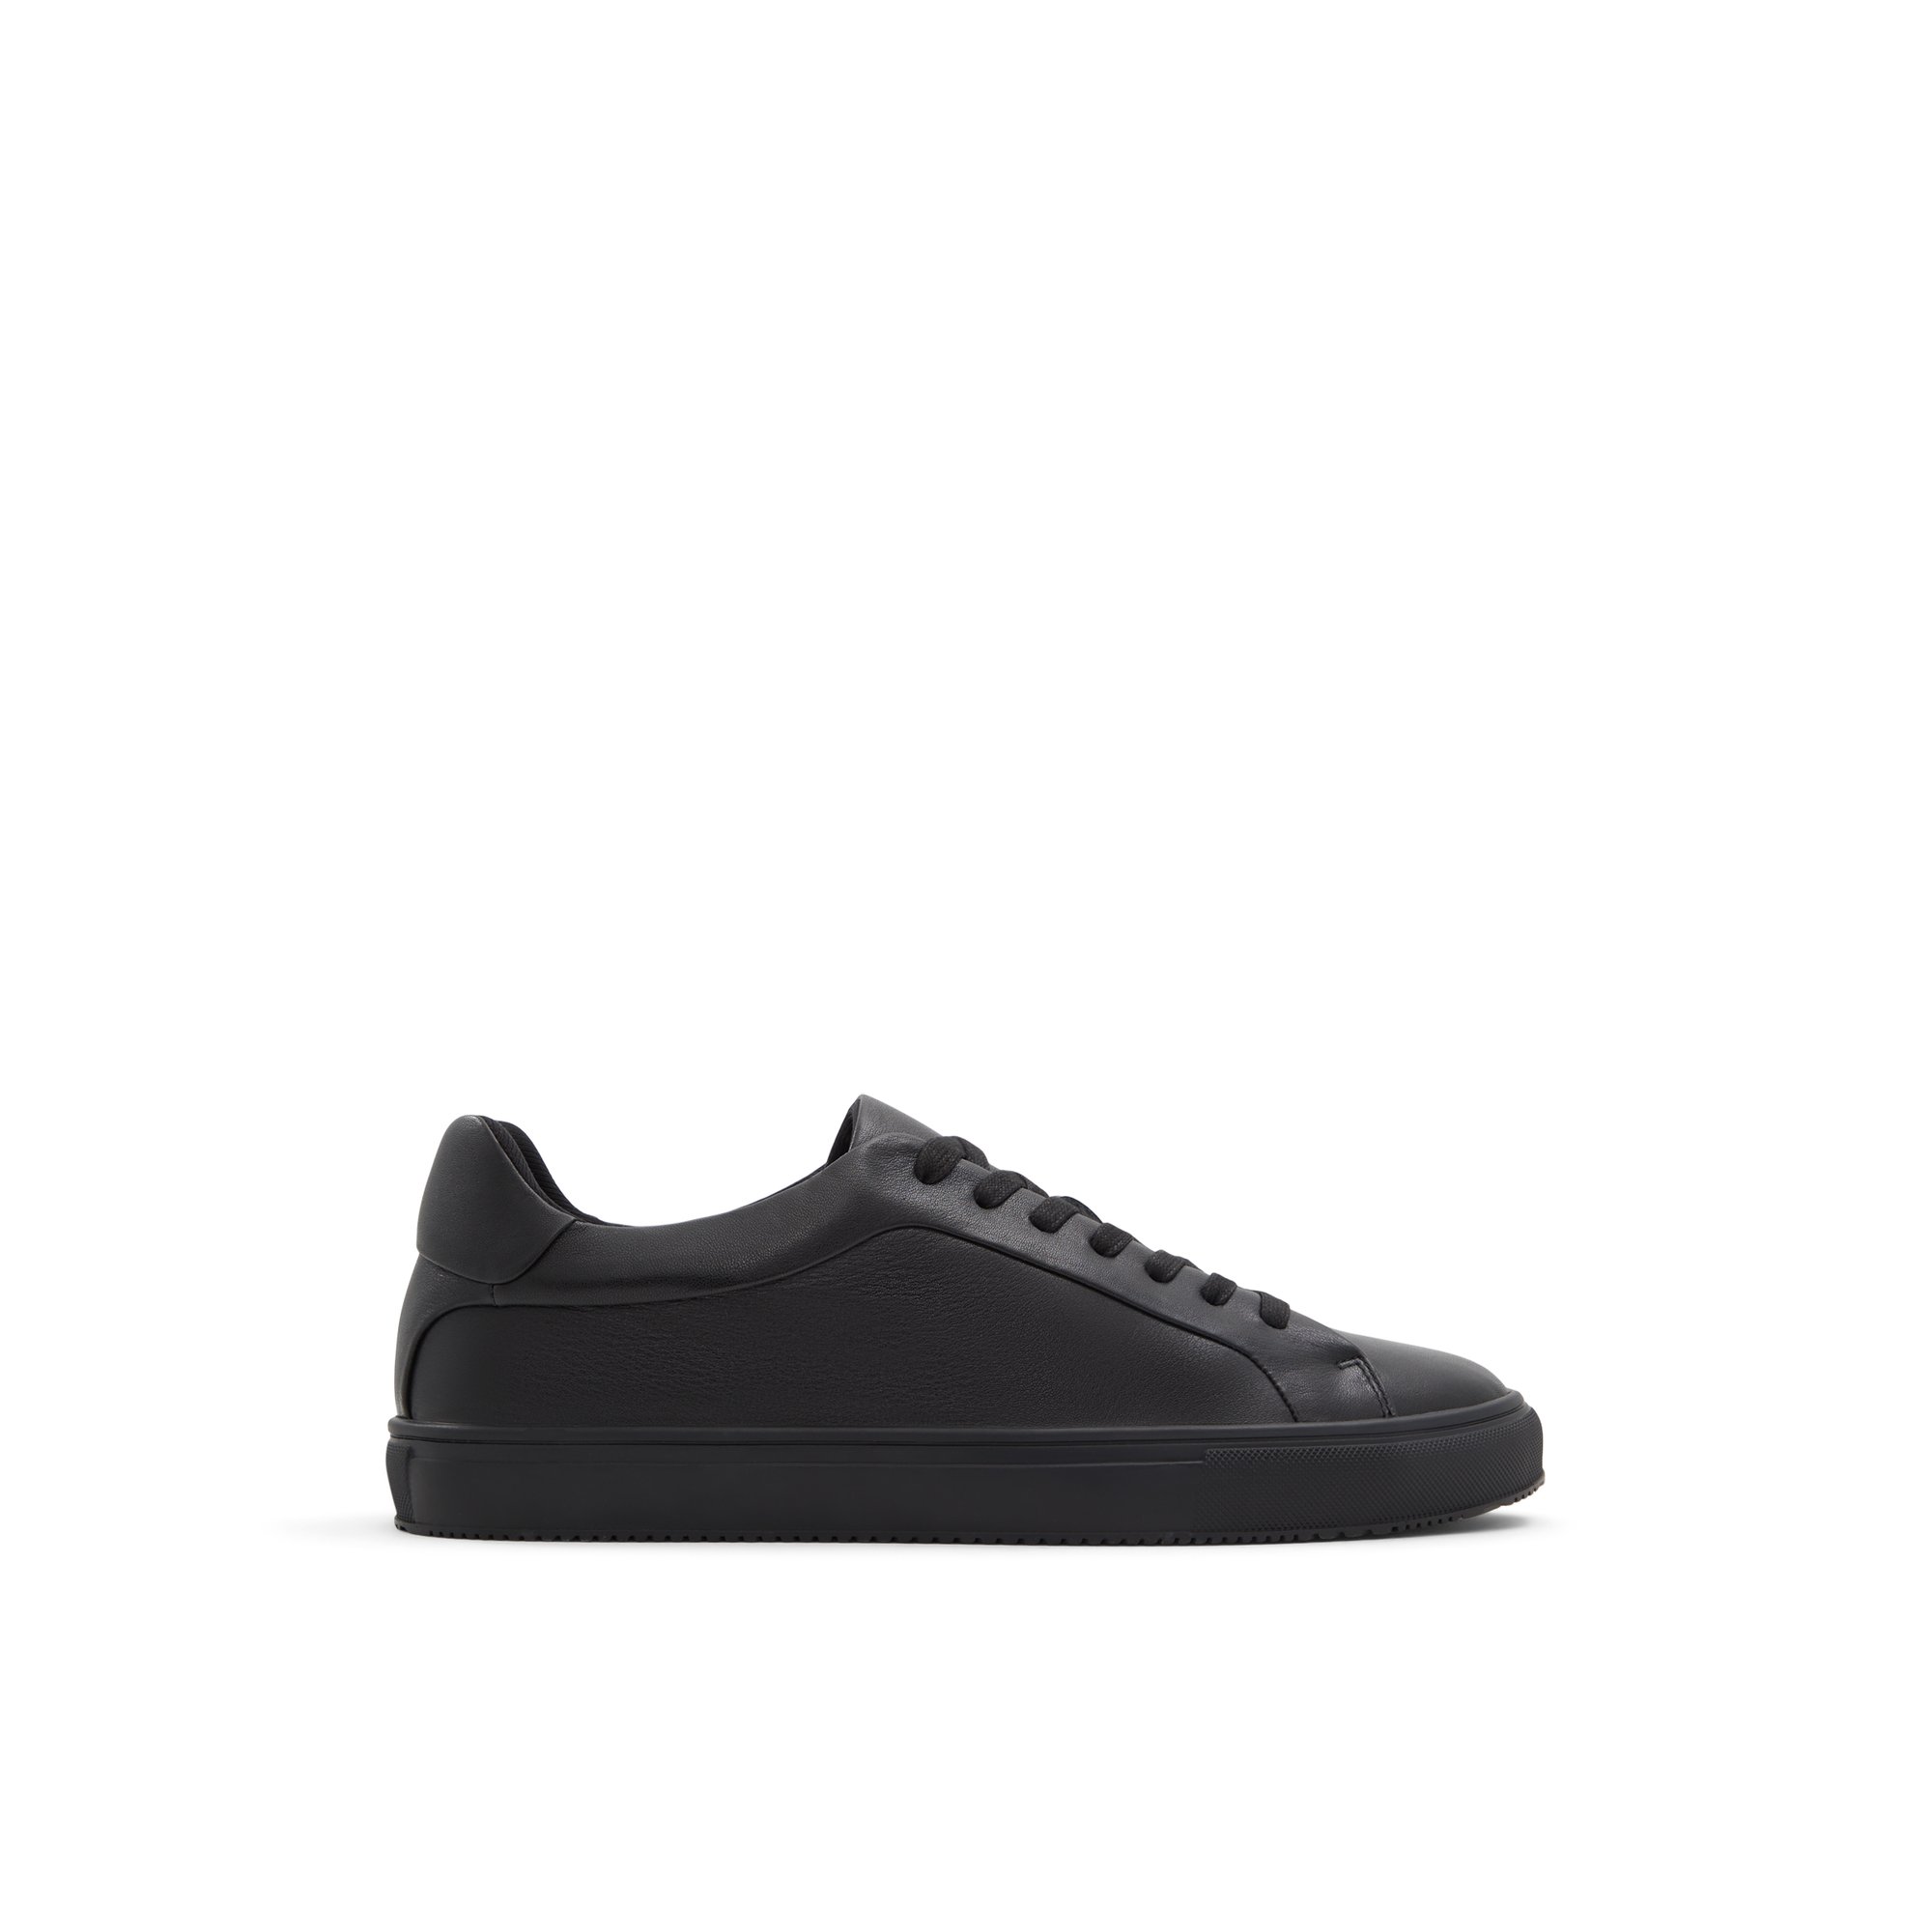 ALDO Cobi - Men's Sneakers Low Top - Black